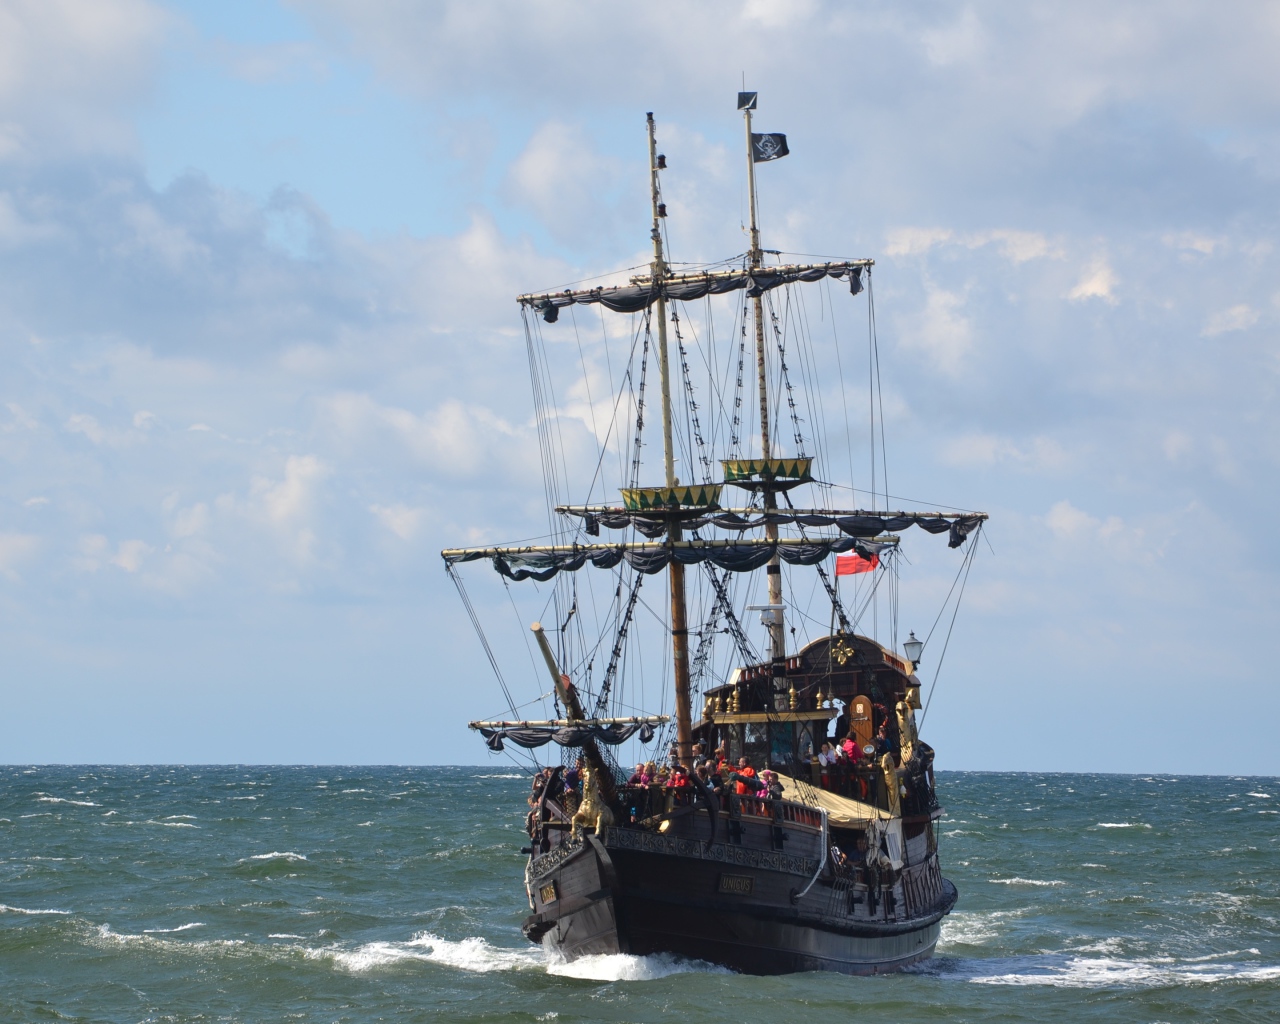 Большой черный пиратский корабль в море